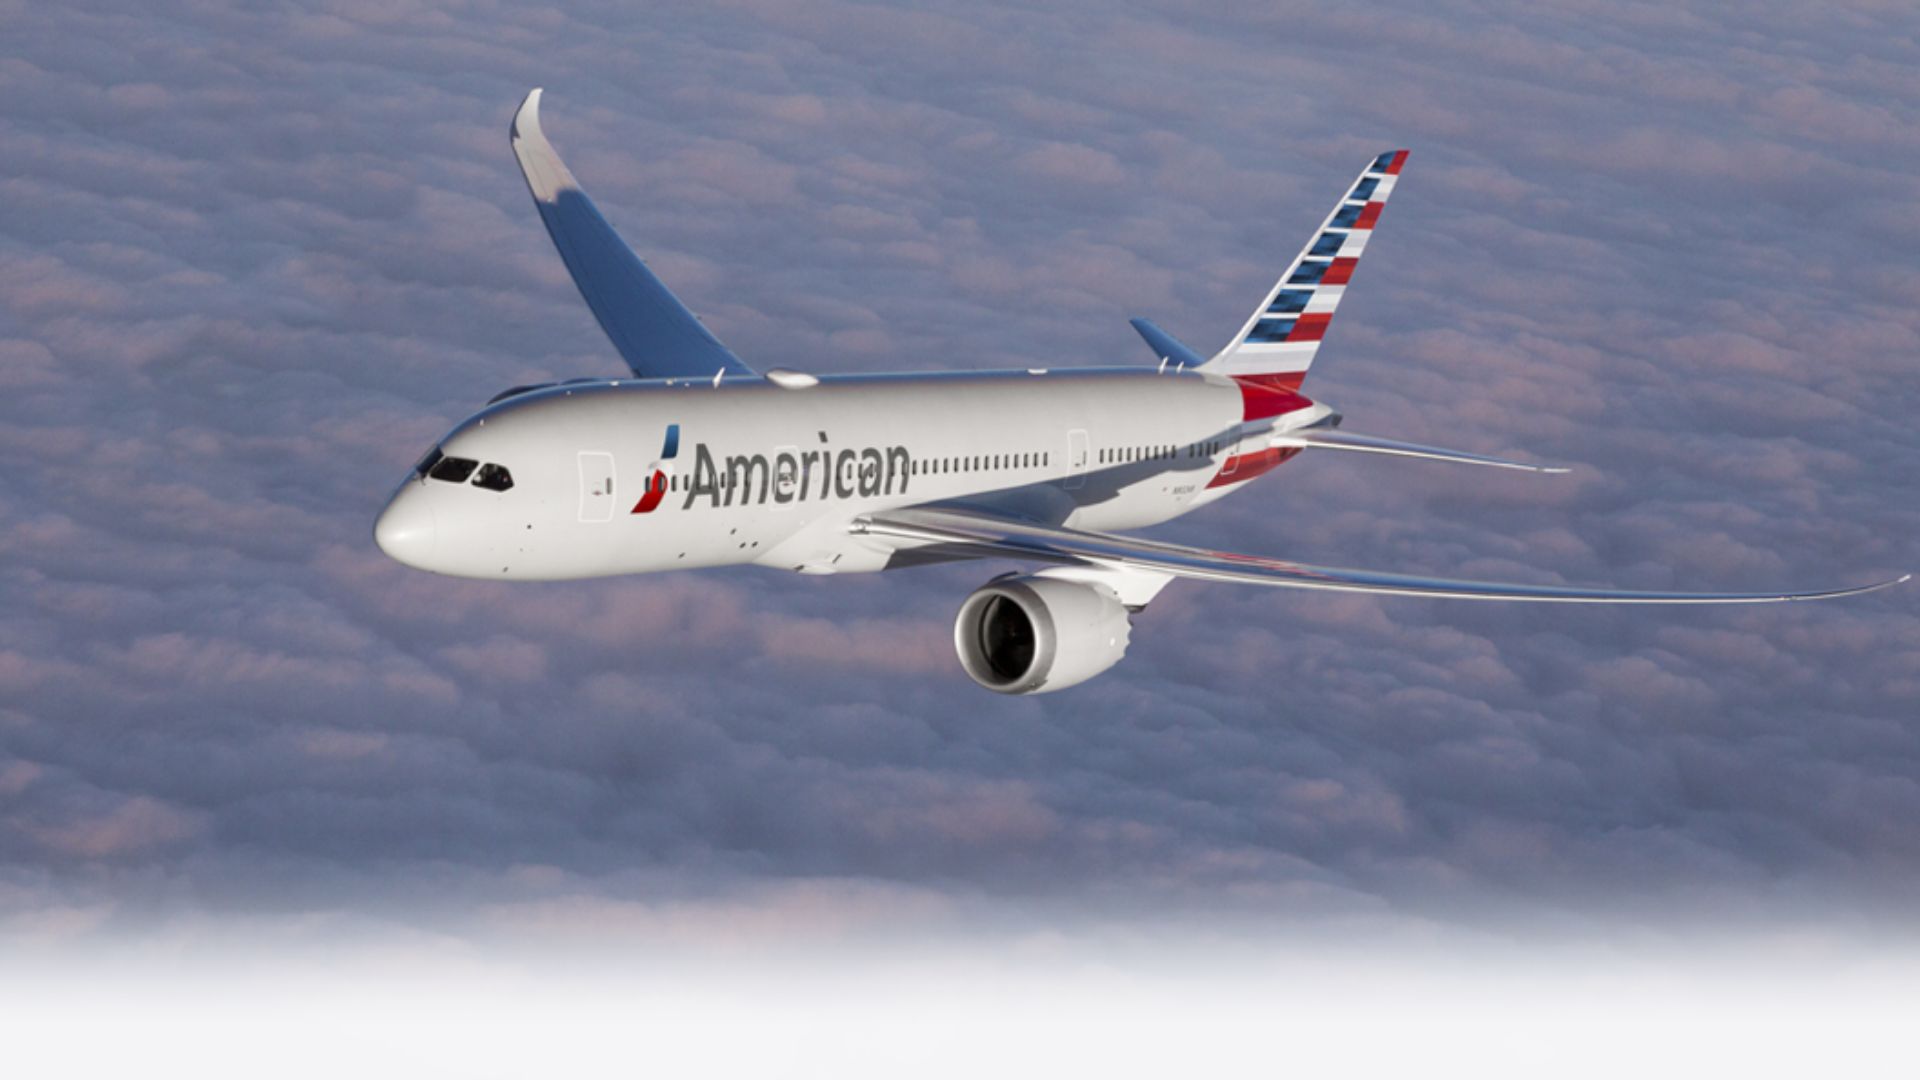 Hasta el momento hay reportes de que American Airlines, Copa Airlines, Fly Allways, Southwest y Conviasa han suspendido los vuelos programados entre el 26 y 28 de septiembre